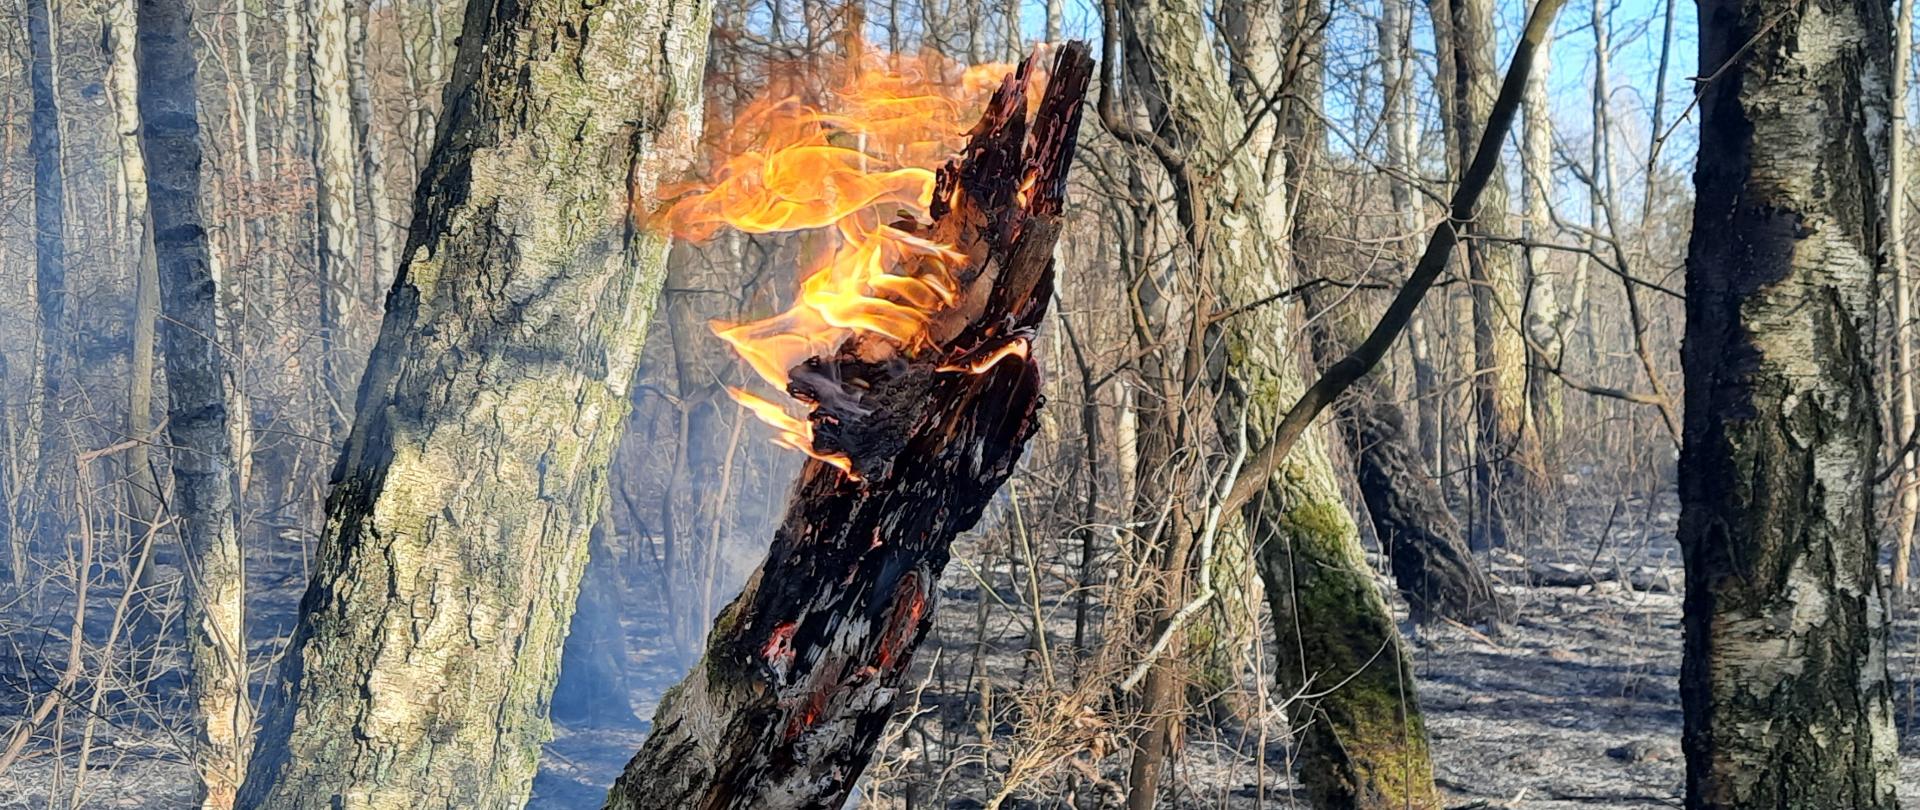 Płonący jeden konar drzewa na tle lasu z wypaloną ściółką. 